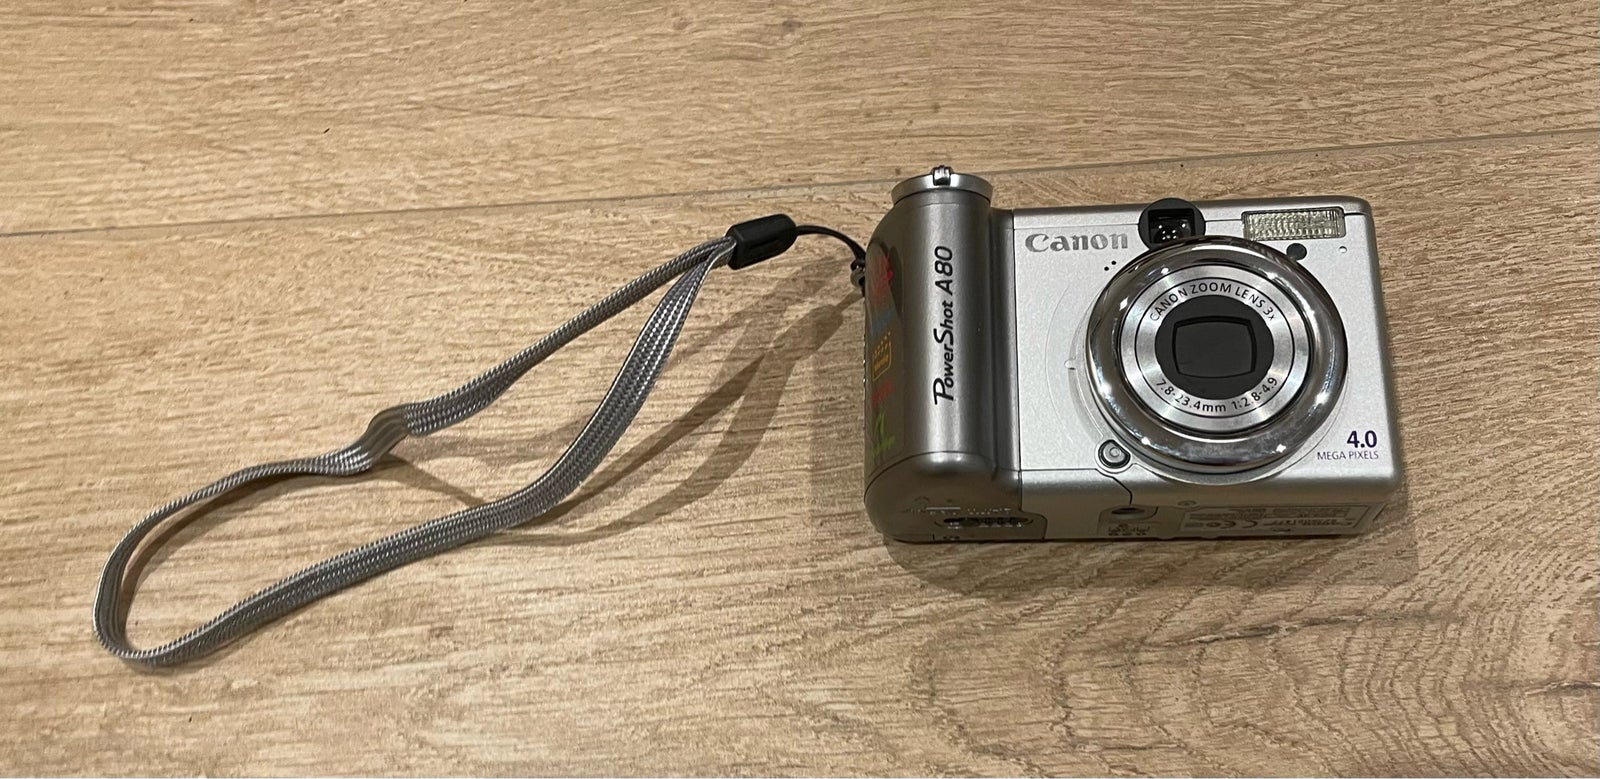 Canon, PowerShot A80 , 4.0 megapixels